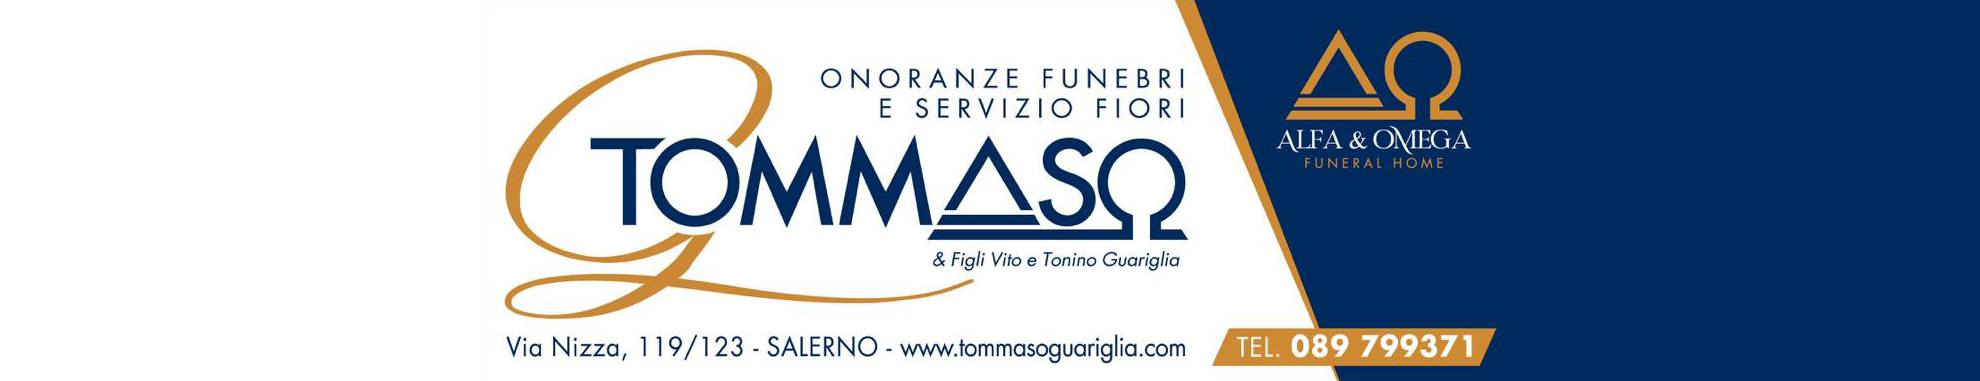 Tommaso-Guariglia-Onoranze-Funebri-Servizio-Fiori-Banner